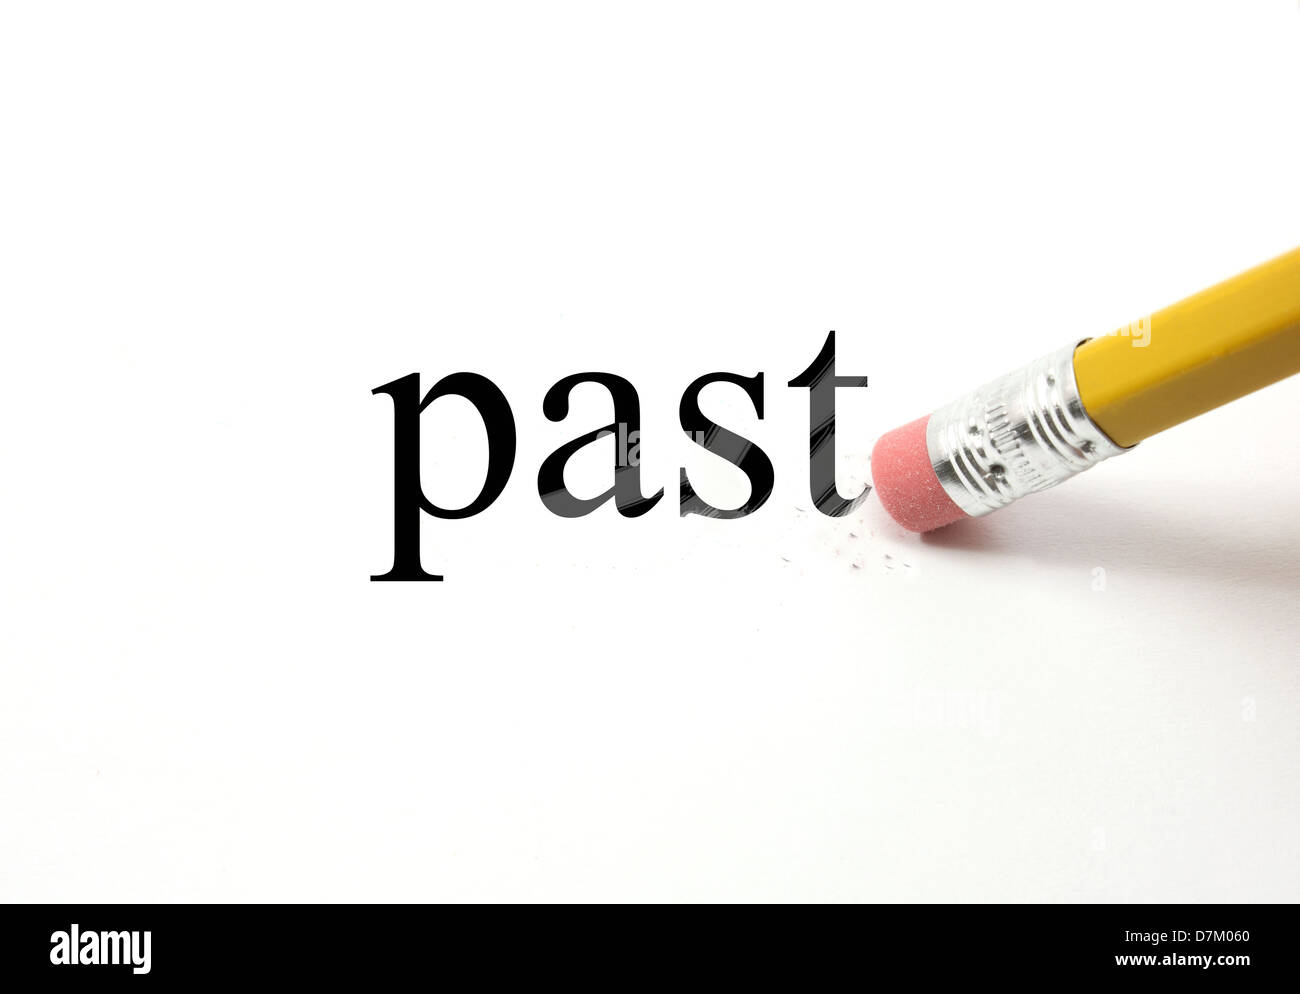 Das Wort Vergangenheit auf weiß geschrieben, mit dem Ende eines Bleistifts, löschen die schwarzen Buchstaben zeigen Radiergummi Marken machen ein tolles Konzept. Stockfoto